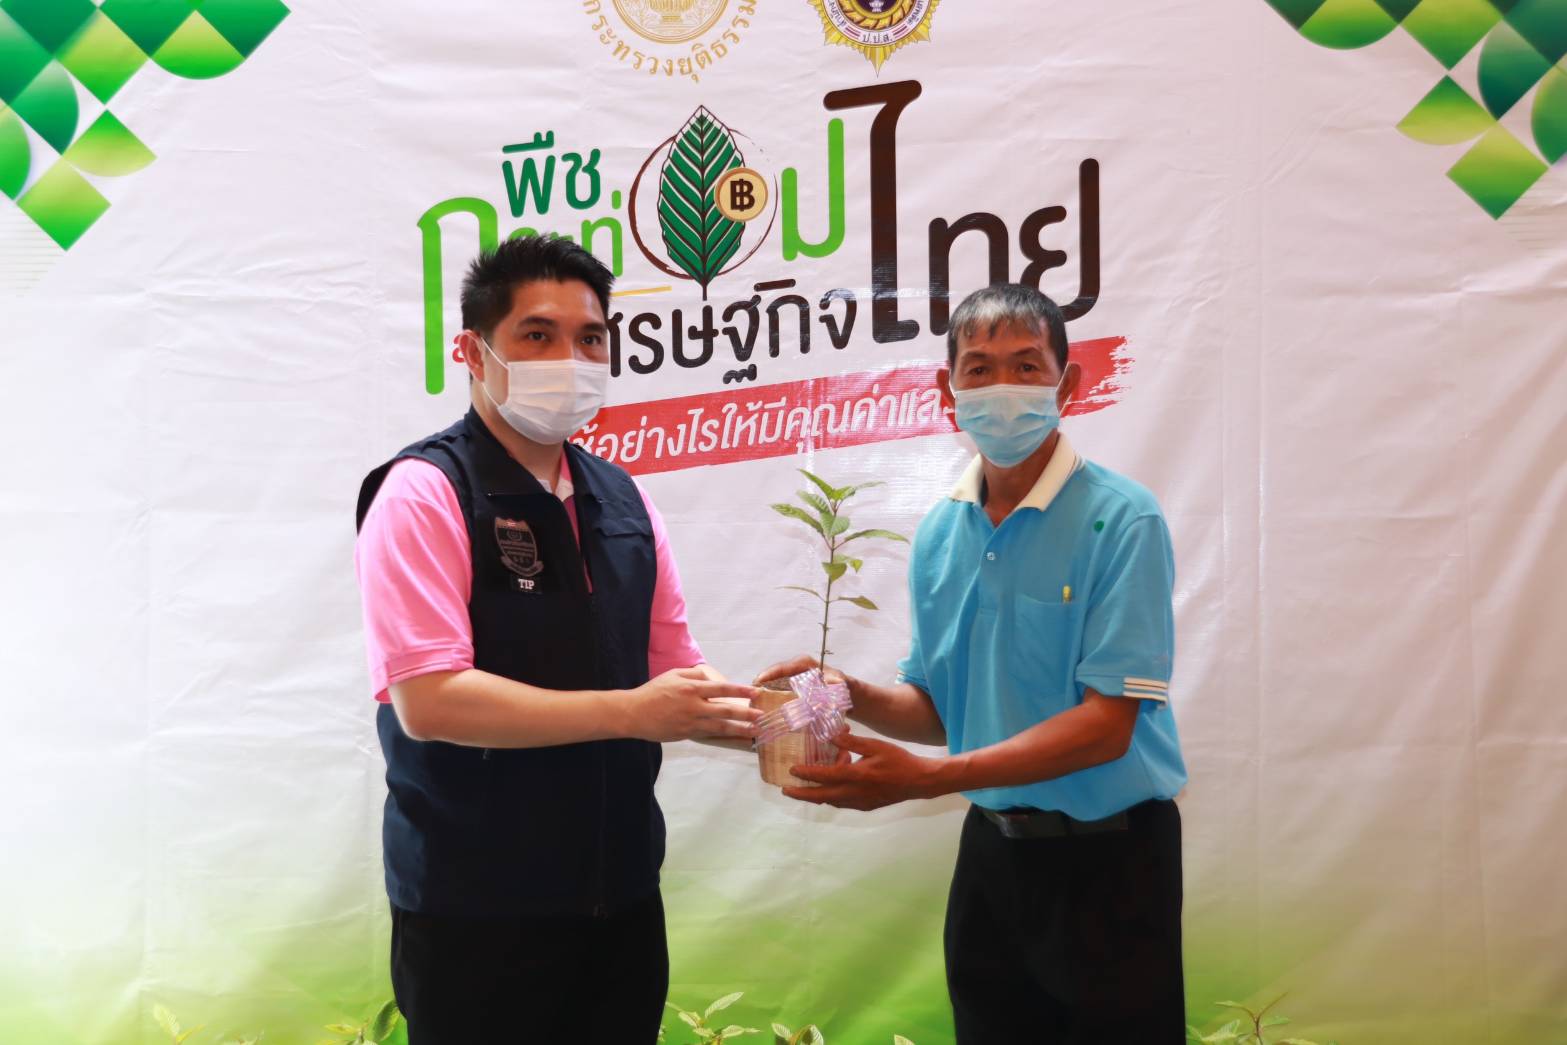 น่าน - ปปส. ภาค 5 จัดนิทรรศการ “พืชกระท่อมสร้างเศรษฐกิจไทย” ณ จังหวัดน่าน